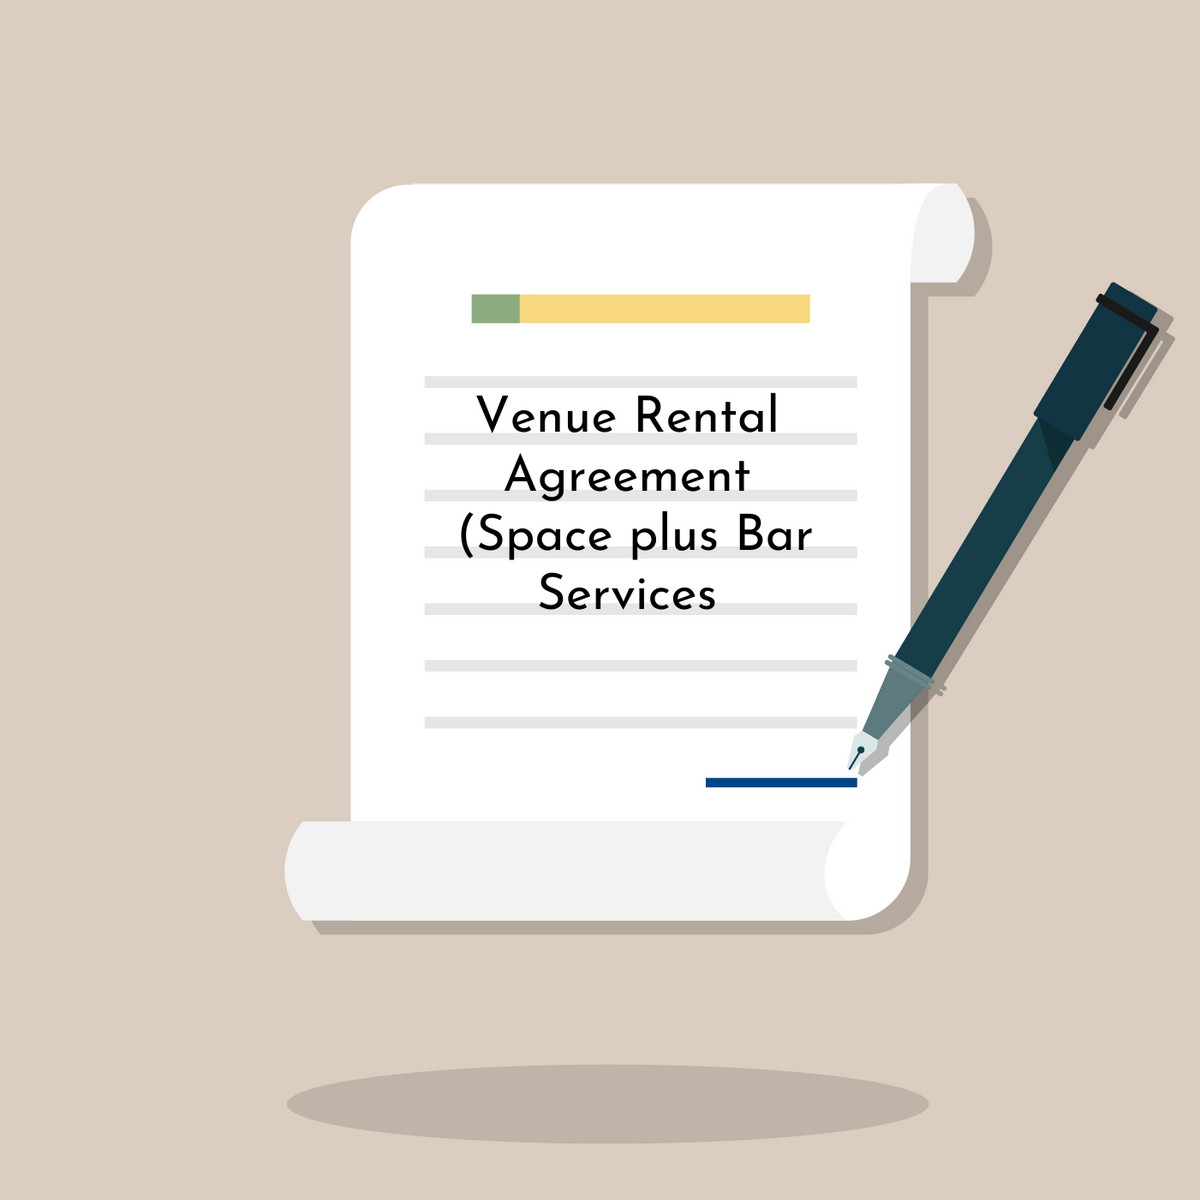 Venue Rental Agreement (Space plus Bar Services)